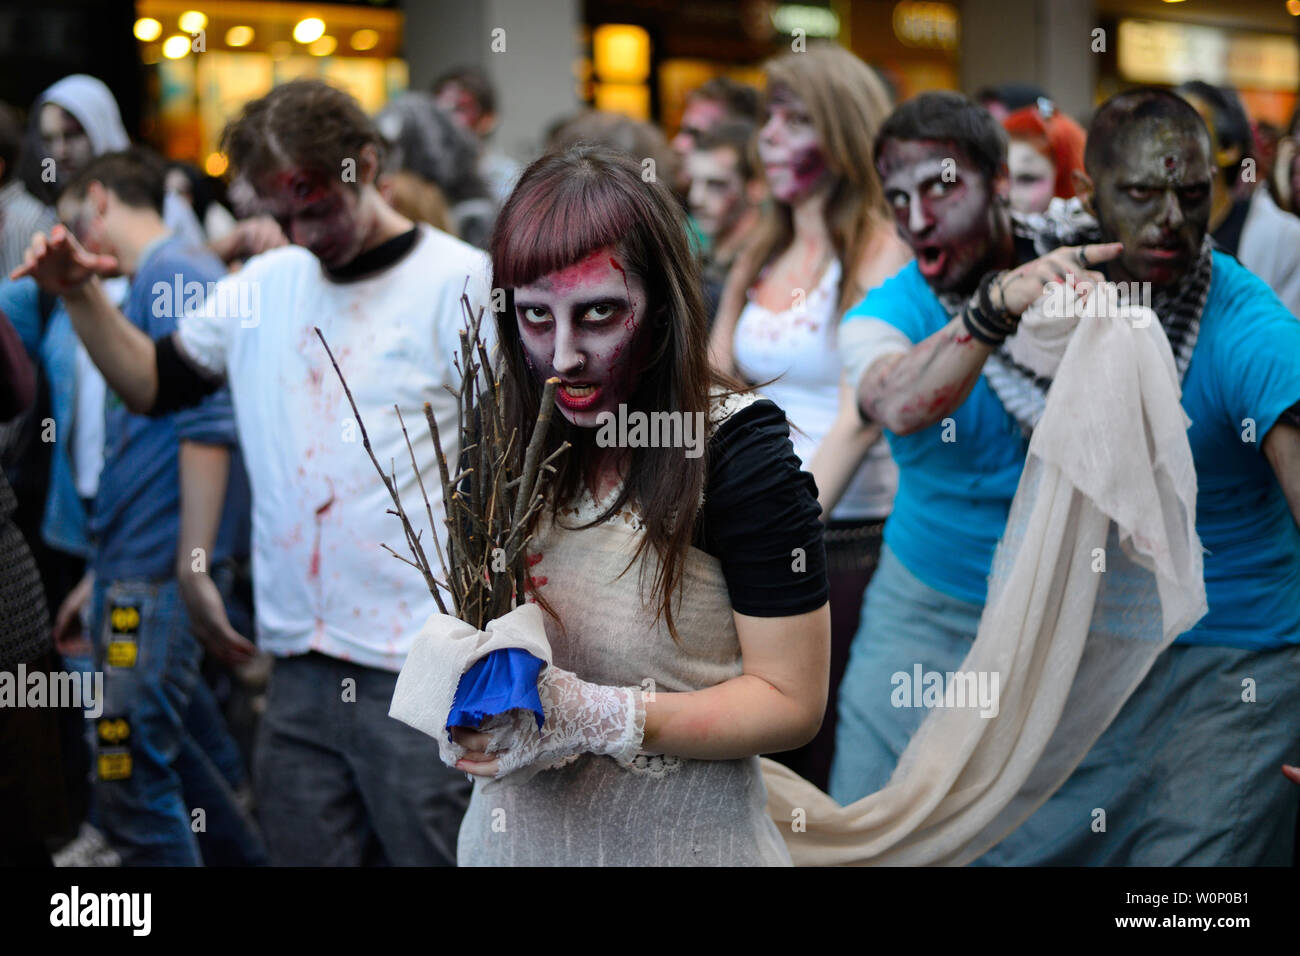 Belgrad, Serbien - Oktober 19, 2013: Leute maskiert als Zombies Paraden auf Straßen bei einem Zombie Walk. Zombie walk ist organisierte vor serbischen SF movi Stockfoto